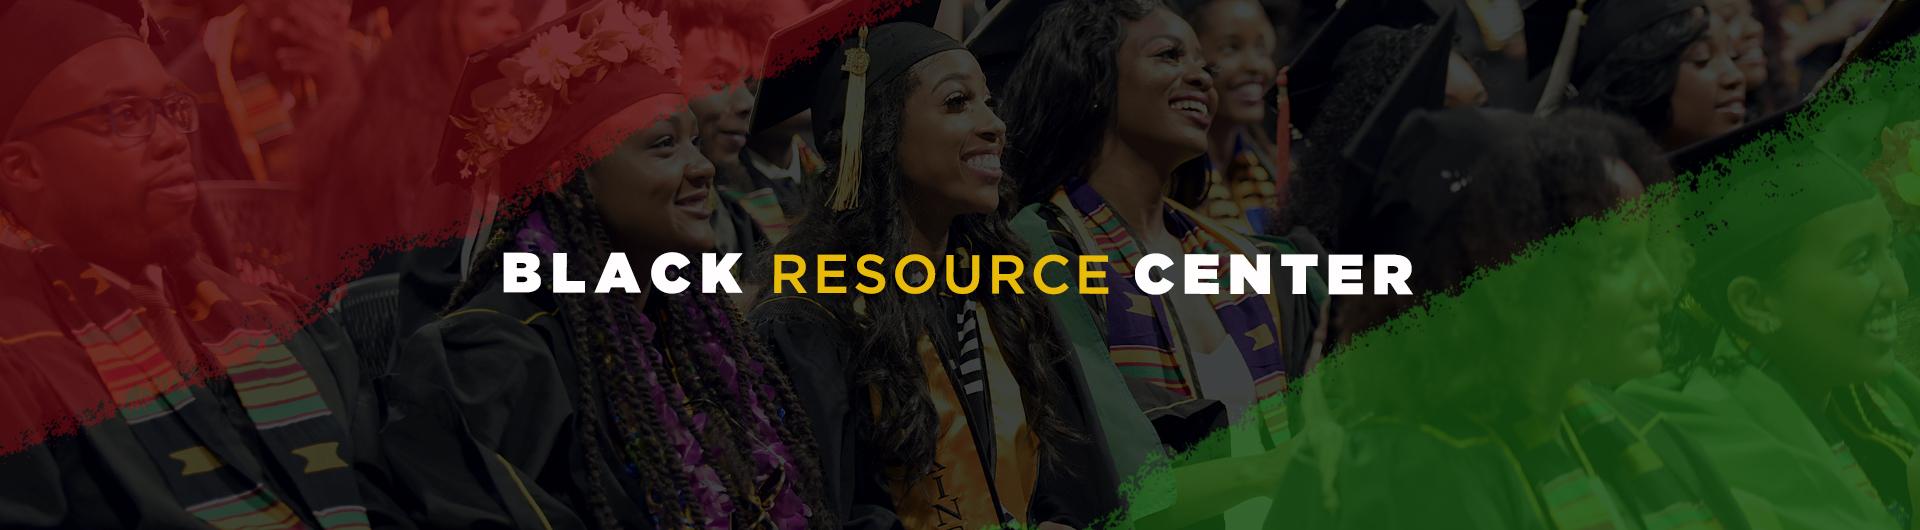 Black Resource Center